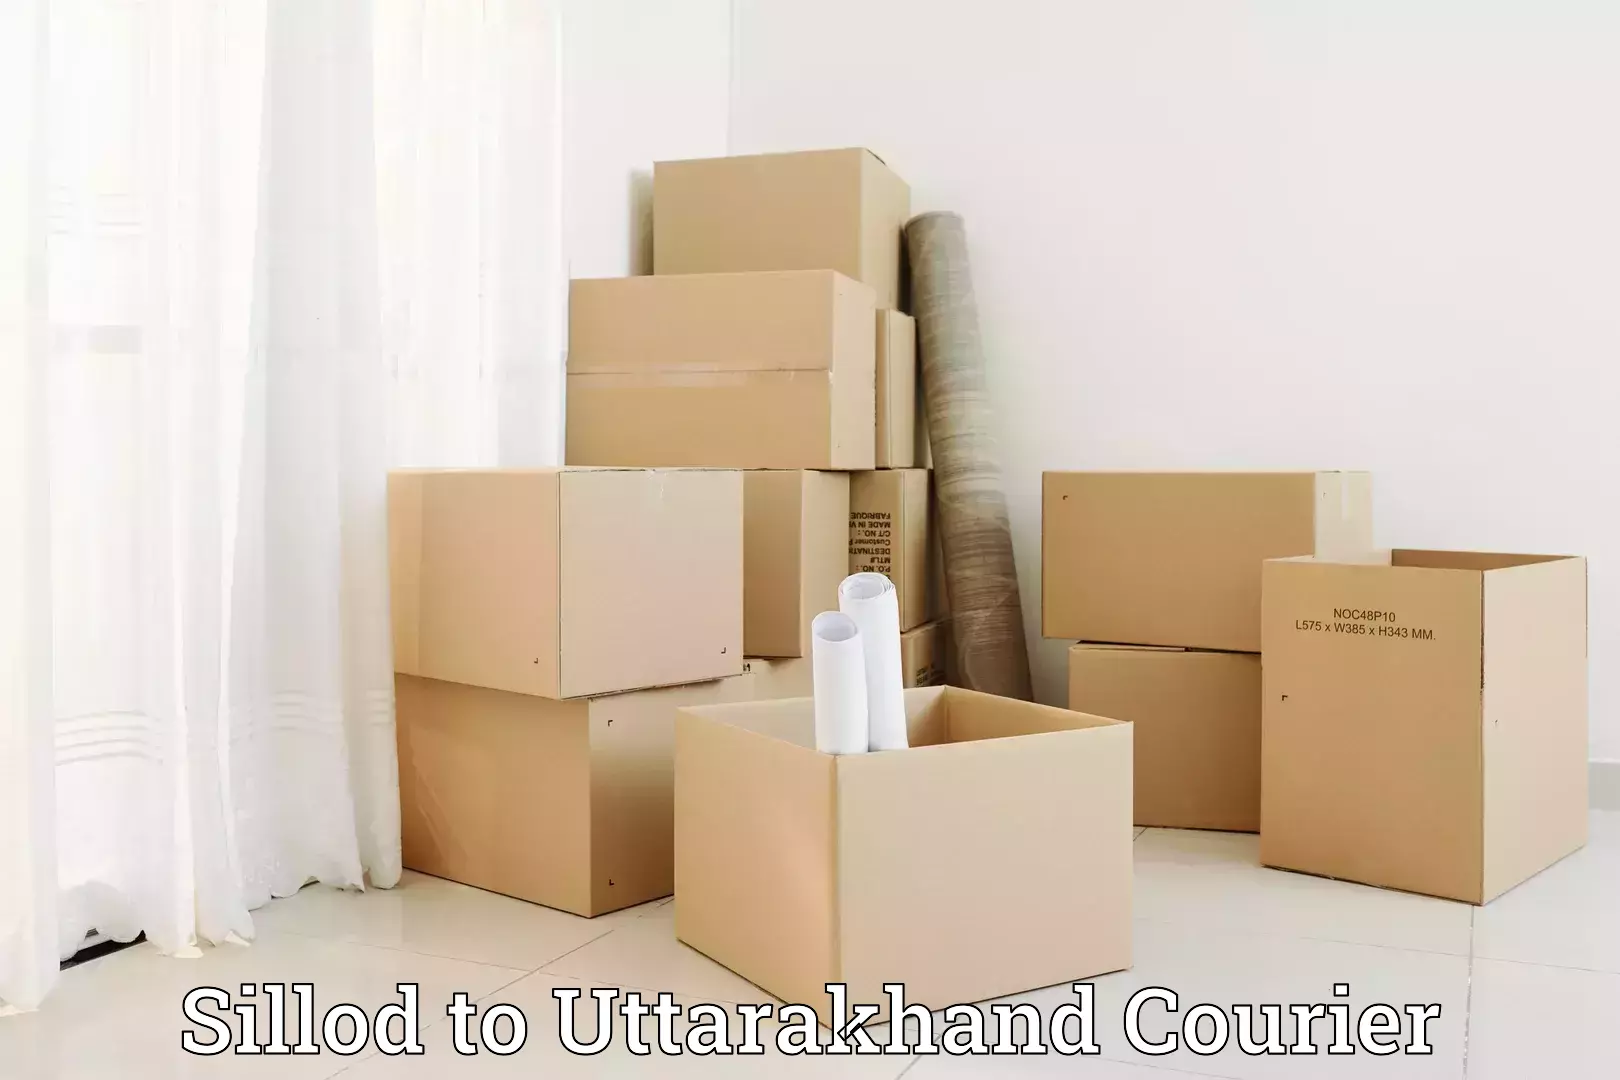 Luggage shipment specialists Sillod to Uttarakhand